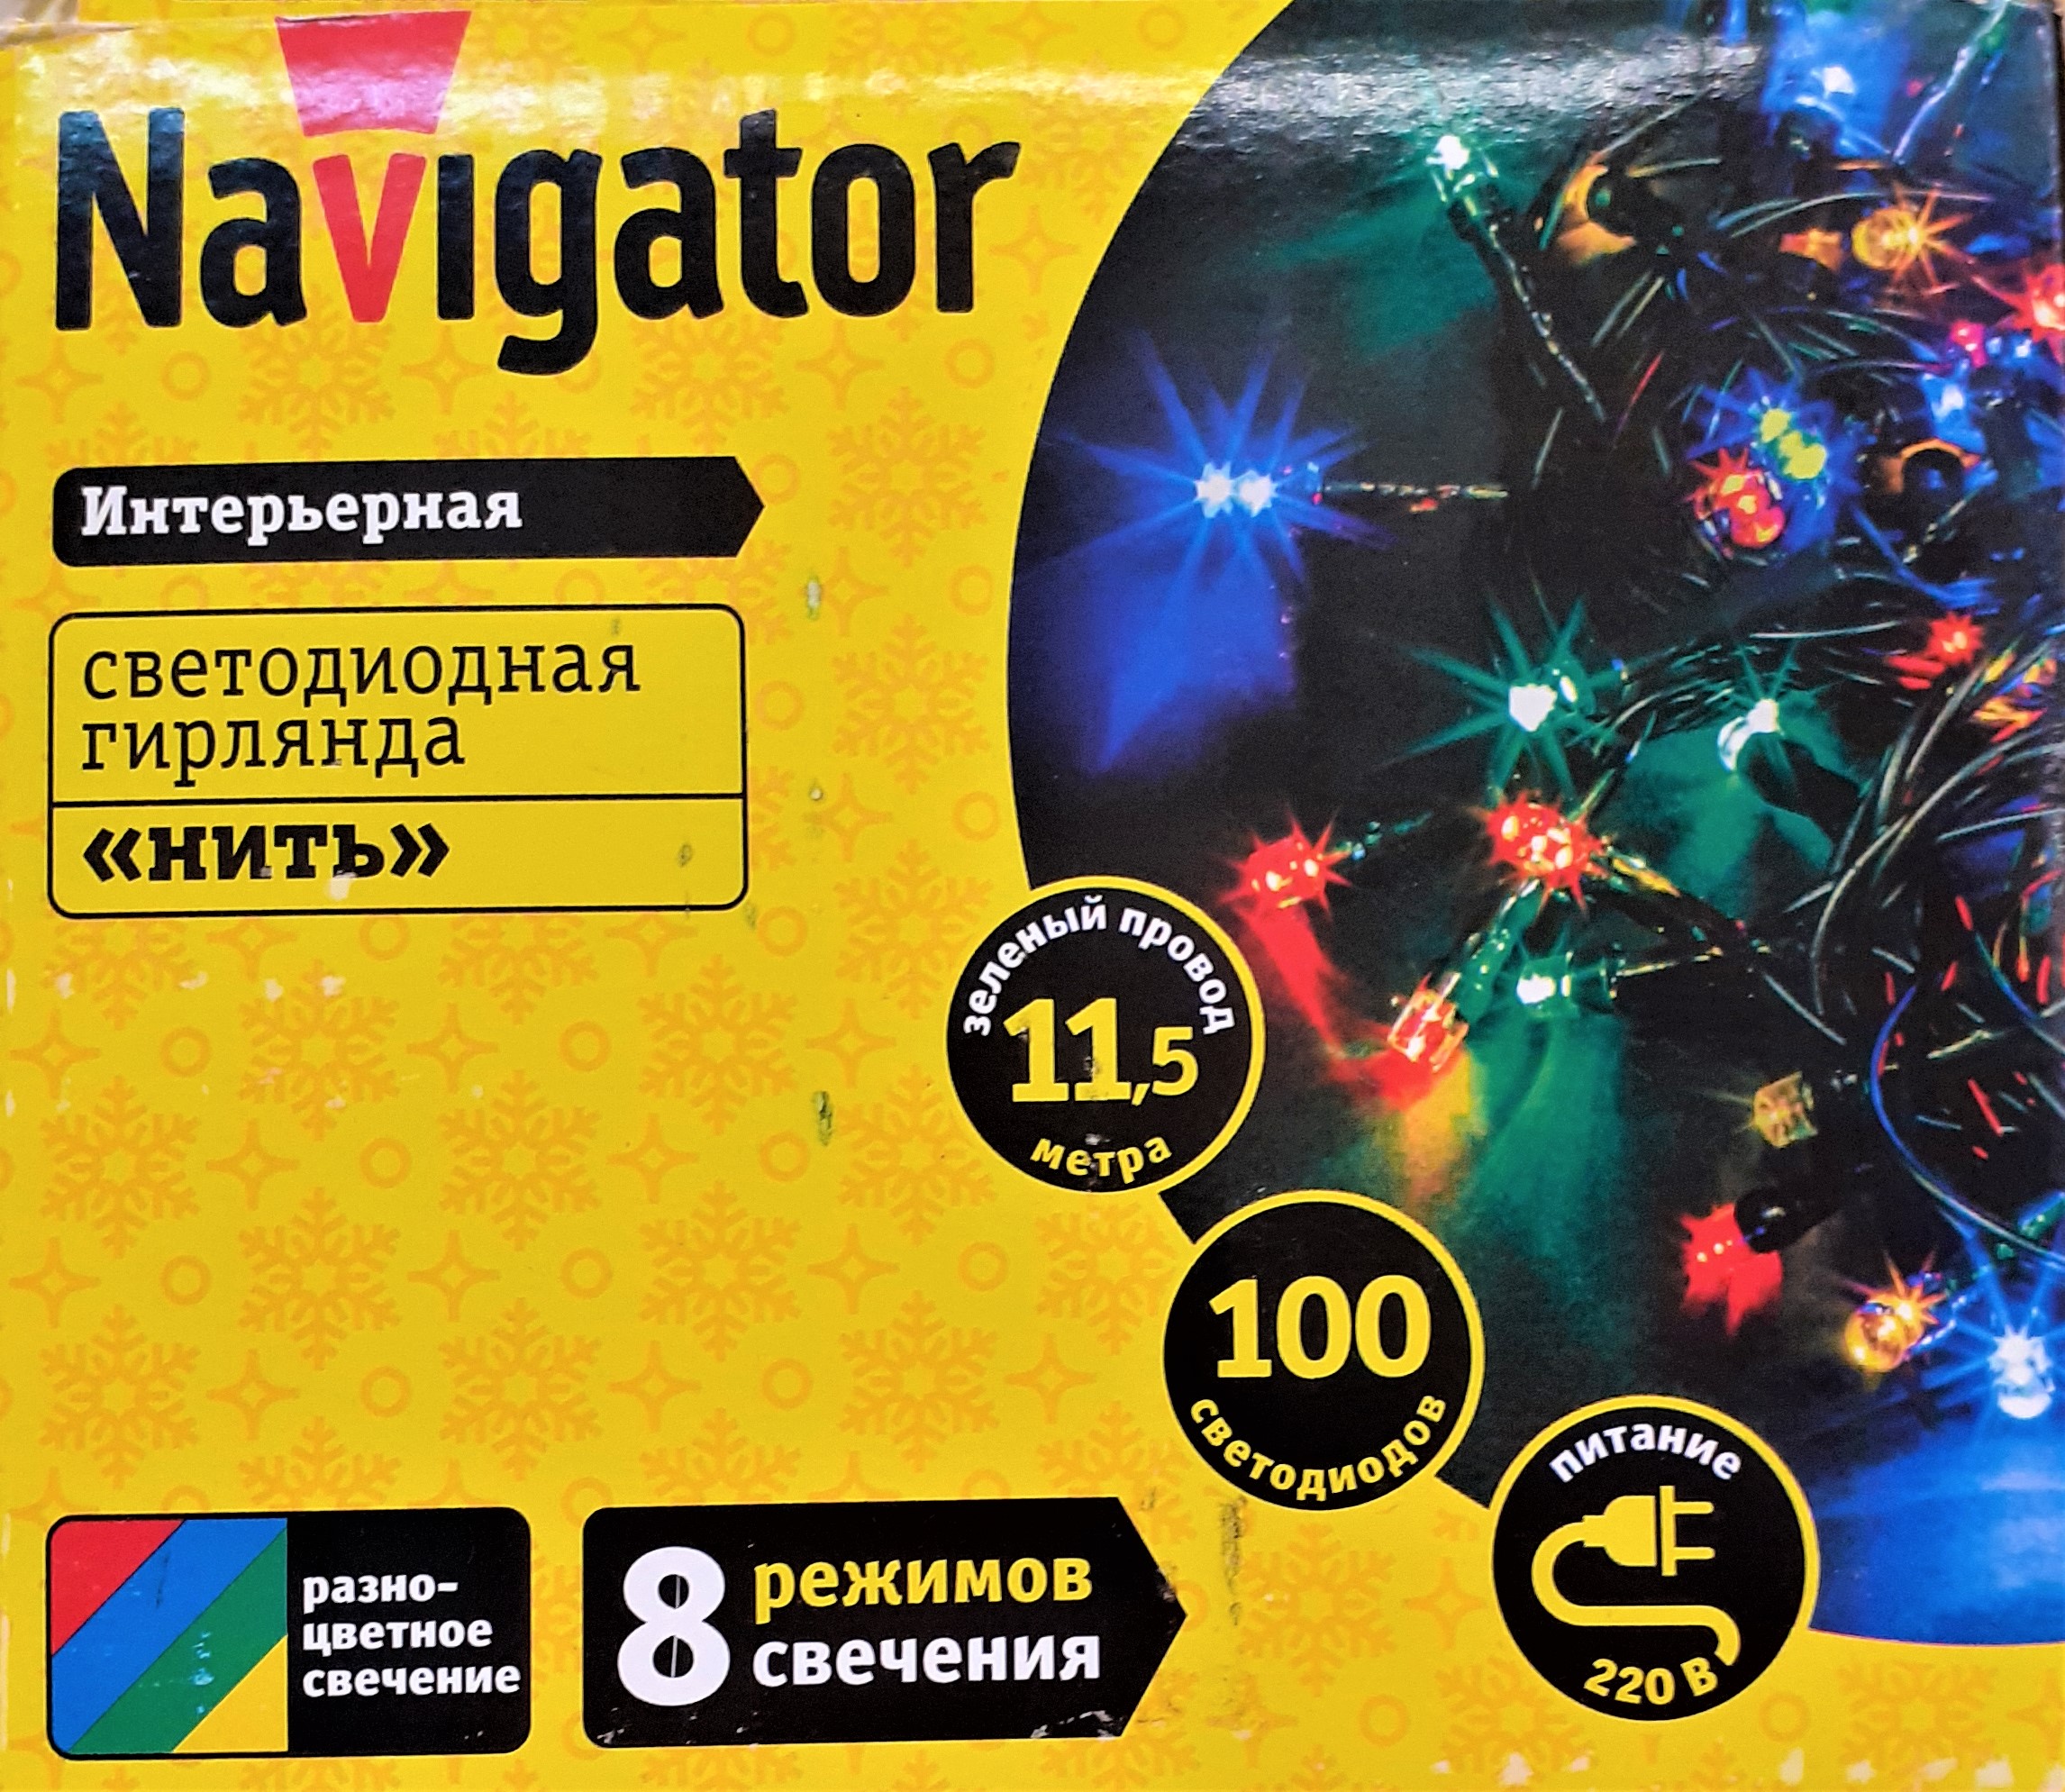 Электрогирлянда интерьерная Navigator светодиодная, разноцветная, 100 ламп, 8 режимов, 11.5 м NGF-S01-100RGBY-10-11.5m-230-C8-G-IP20 14020